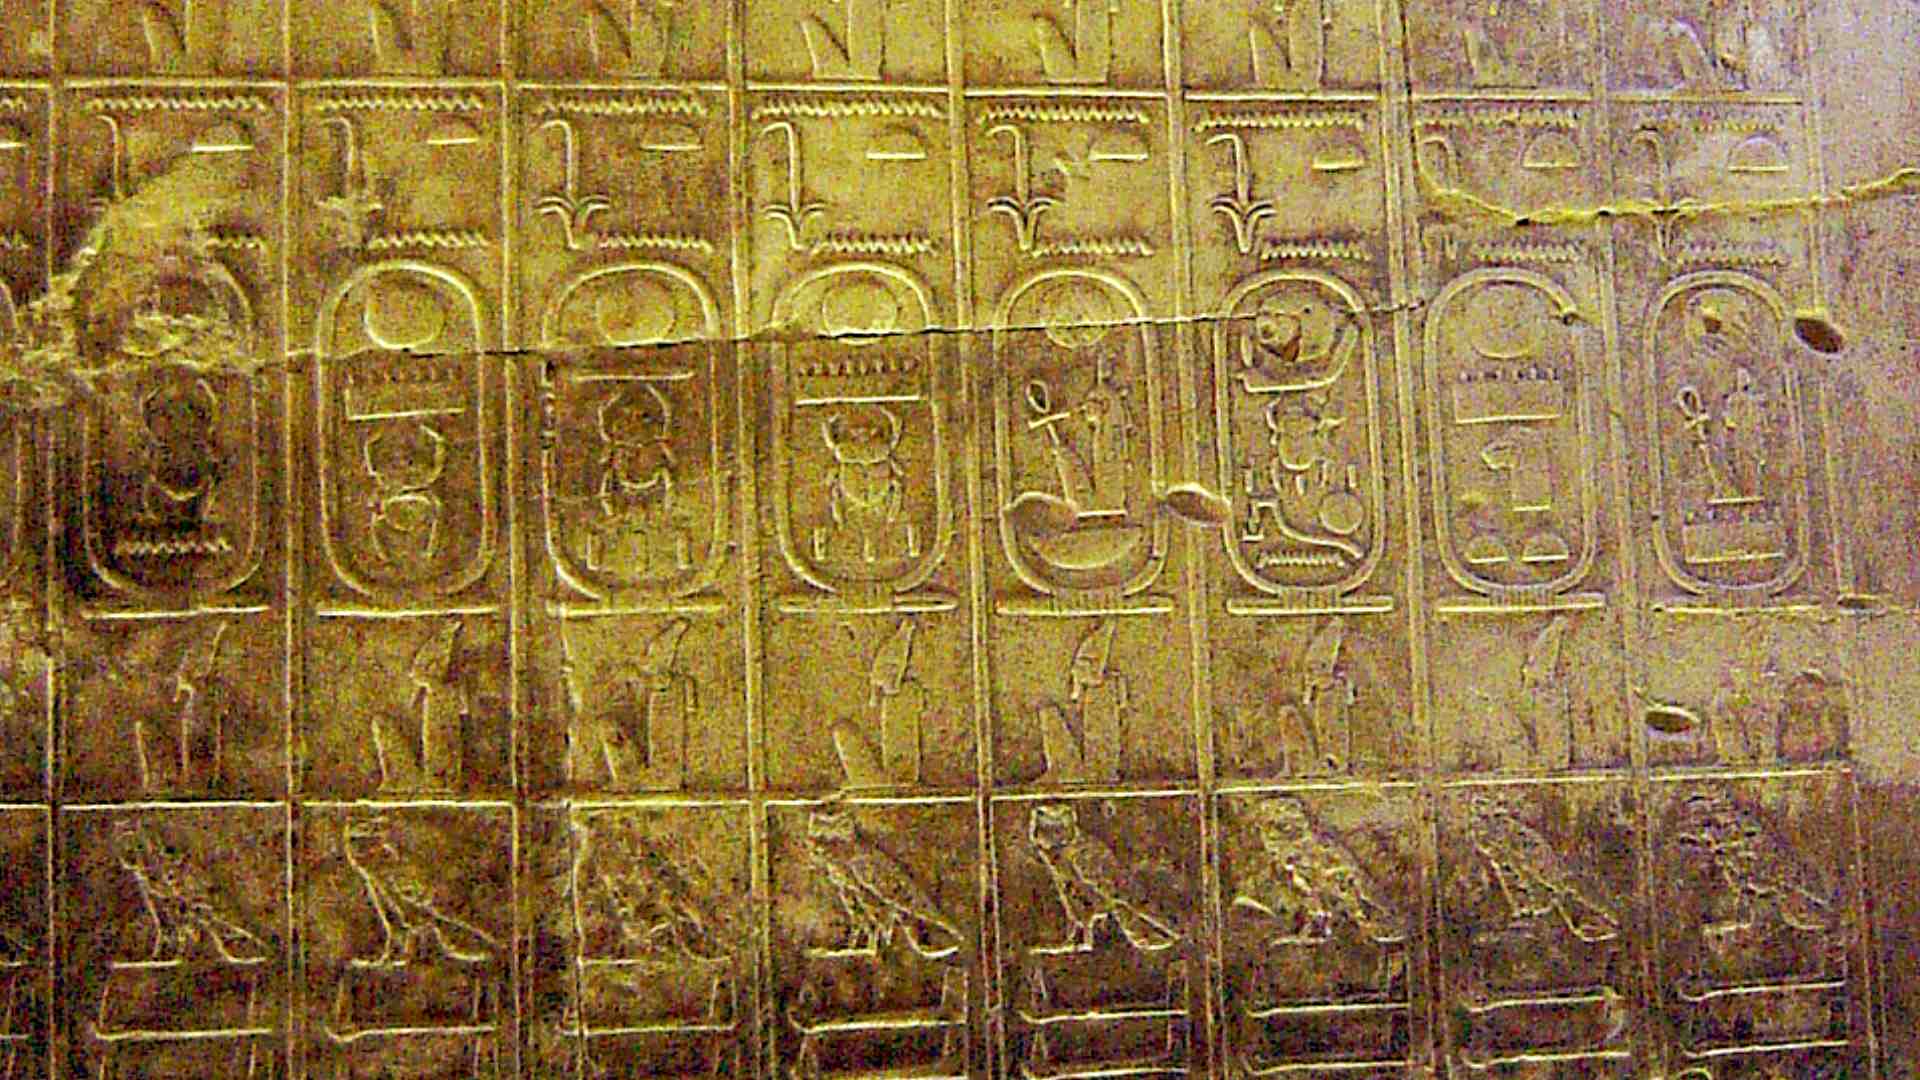 Liste d'Abydos mentionnant 76 rois des 19 premières dynasties égyptiennes - Domaine public